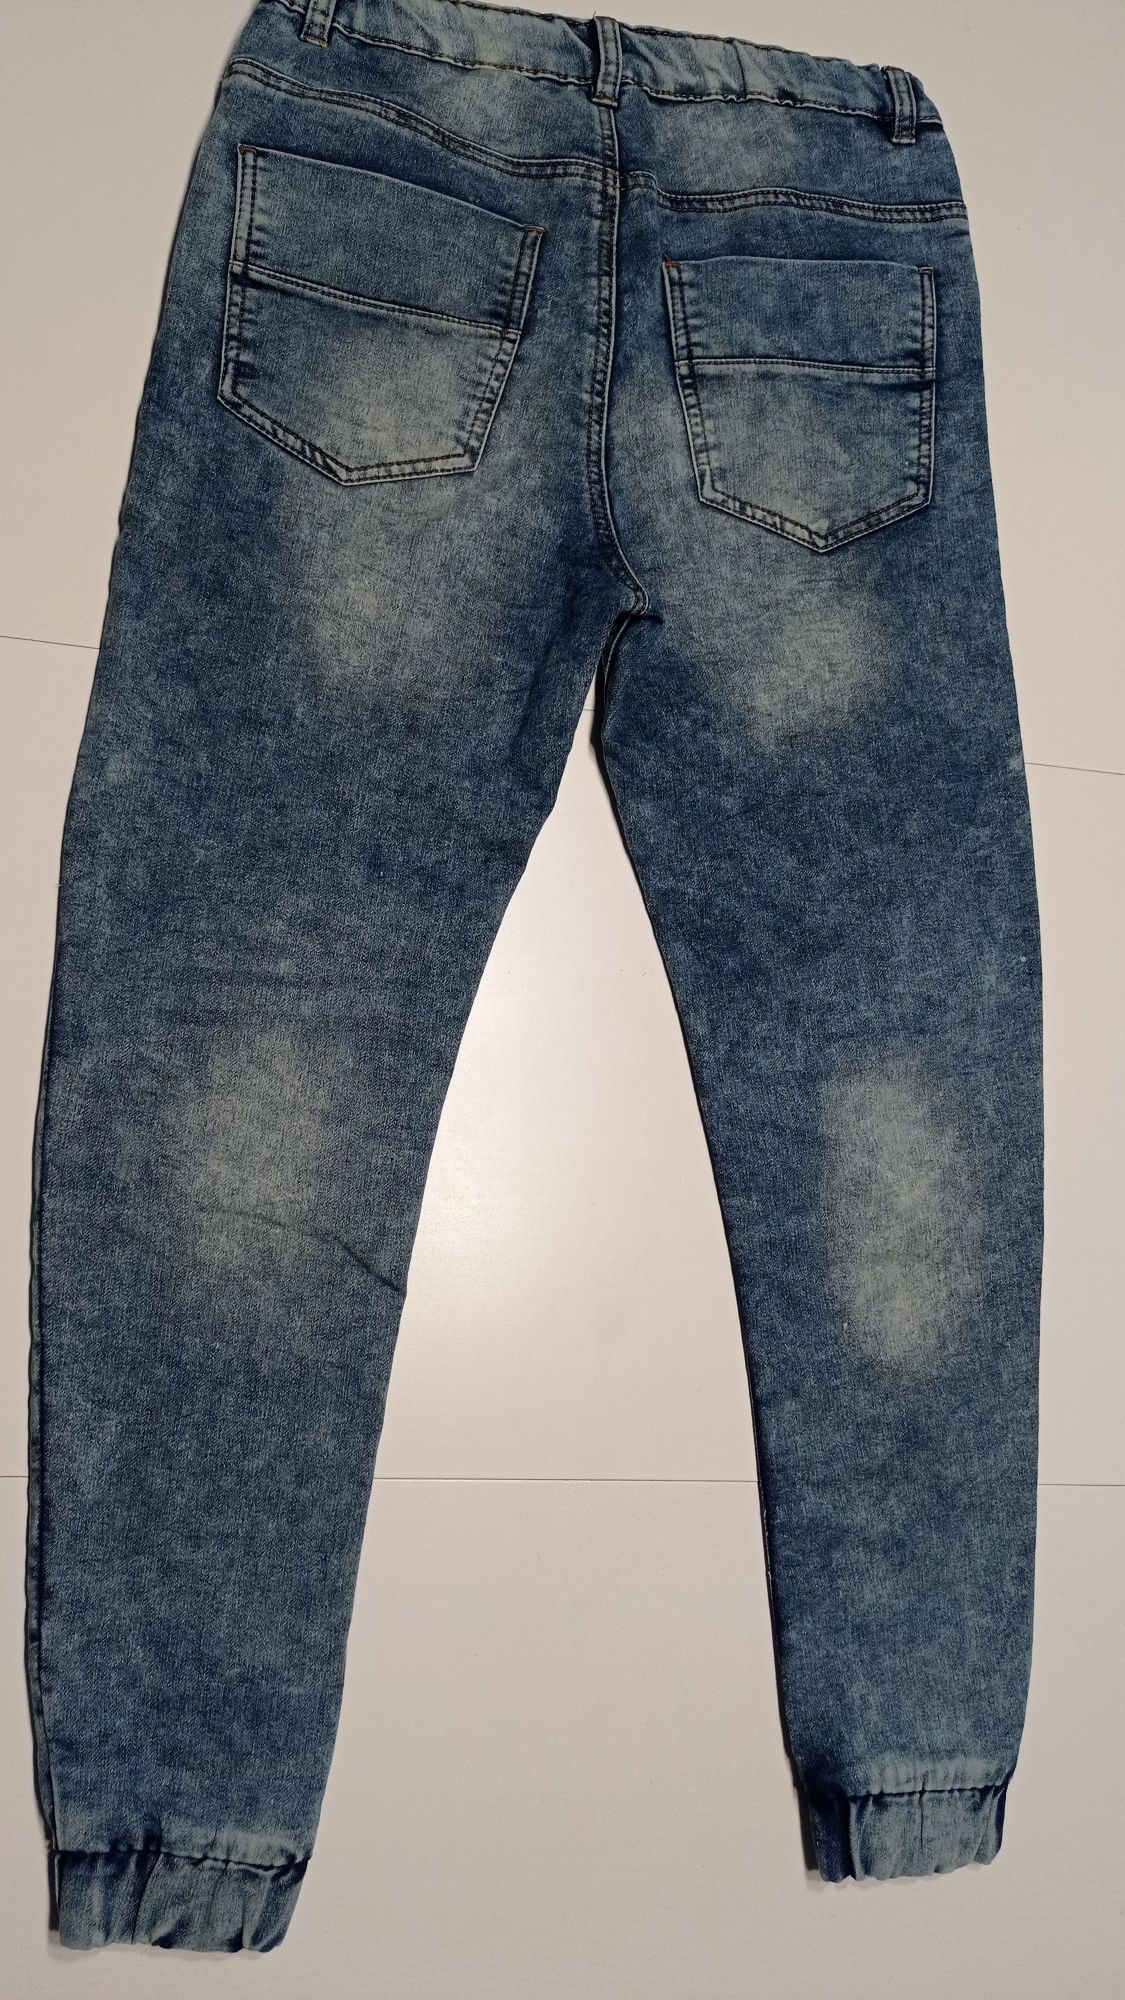 Spodnie jeansy dresy chłopięce 170, 4 pary, cena 30 zł / szt